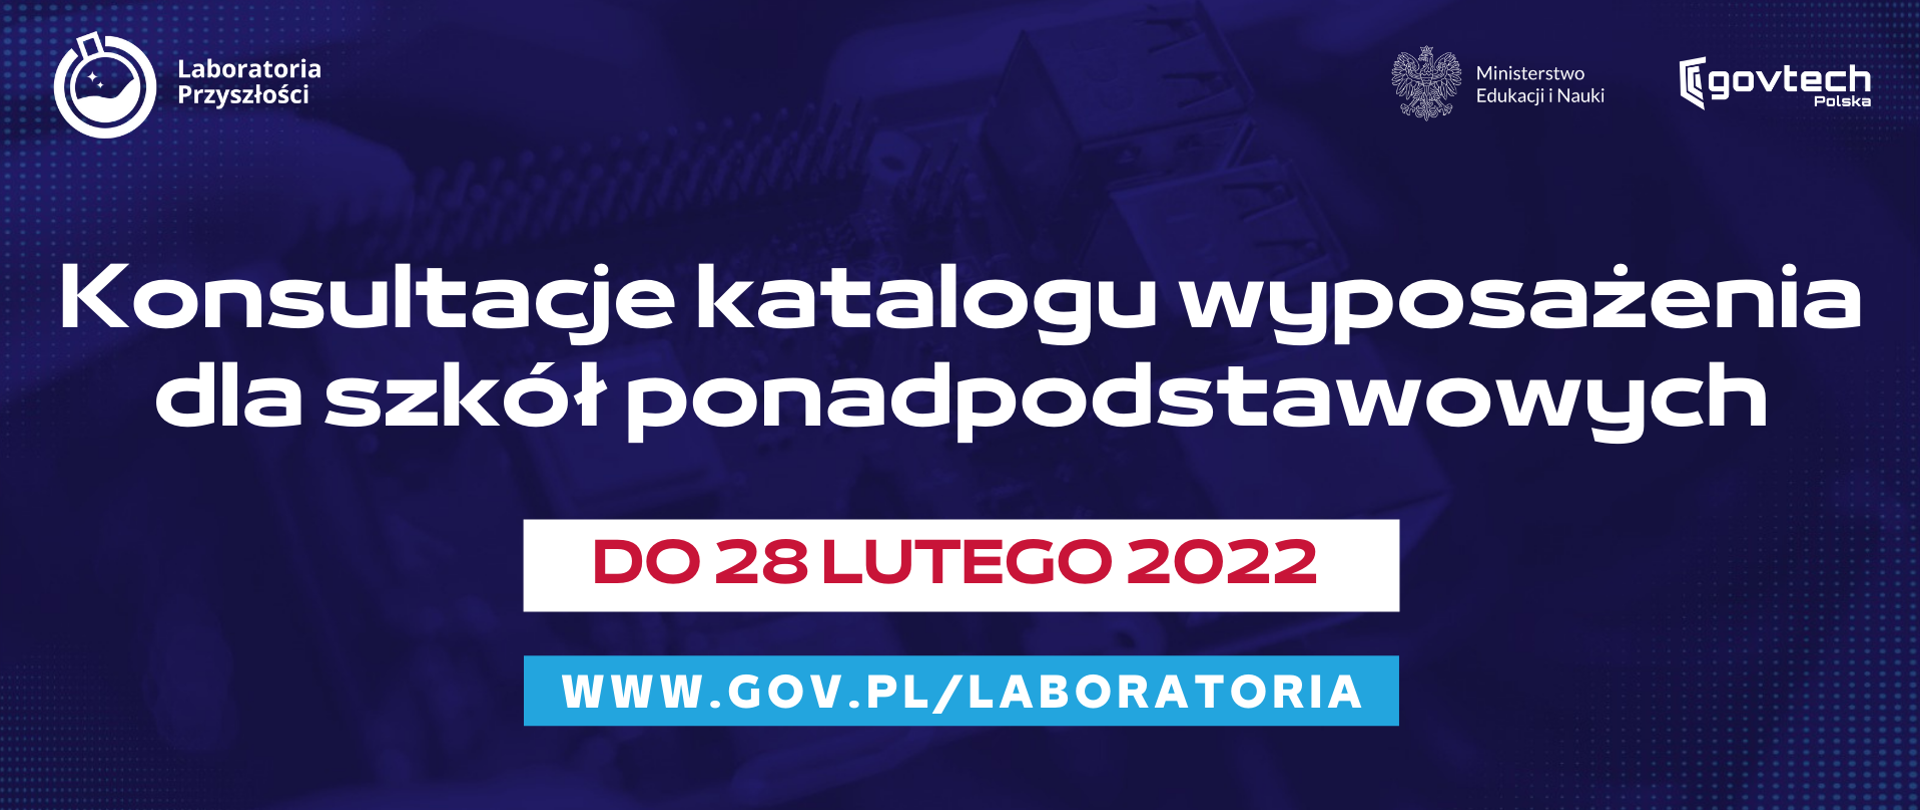 Konsultacje katalogu wyposażenia dla szkół ponadpodstawowych
do 28 lutego 2022
www.gov.pl/laboratoria